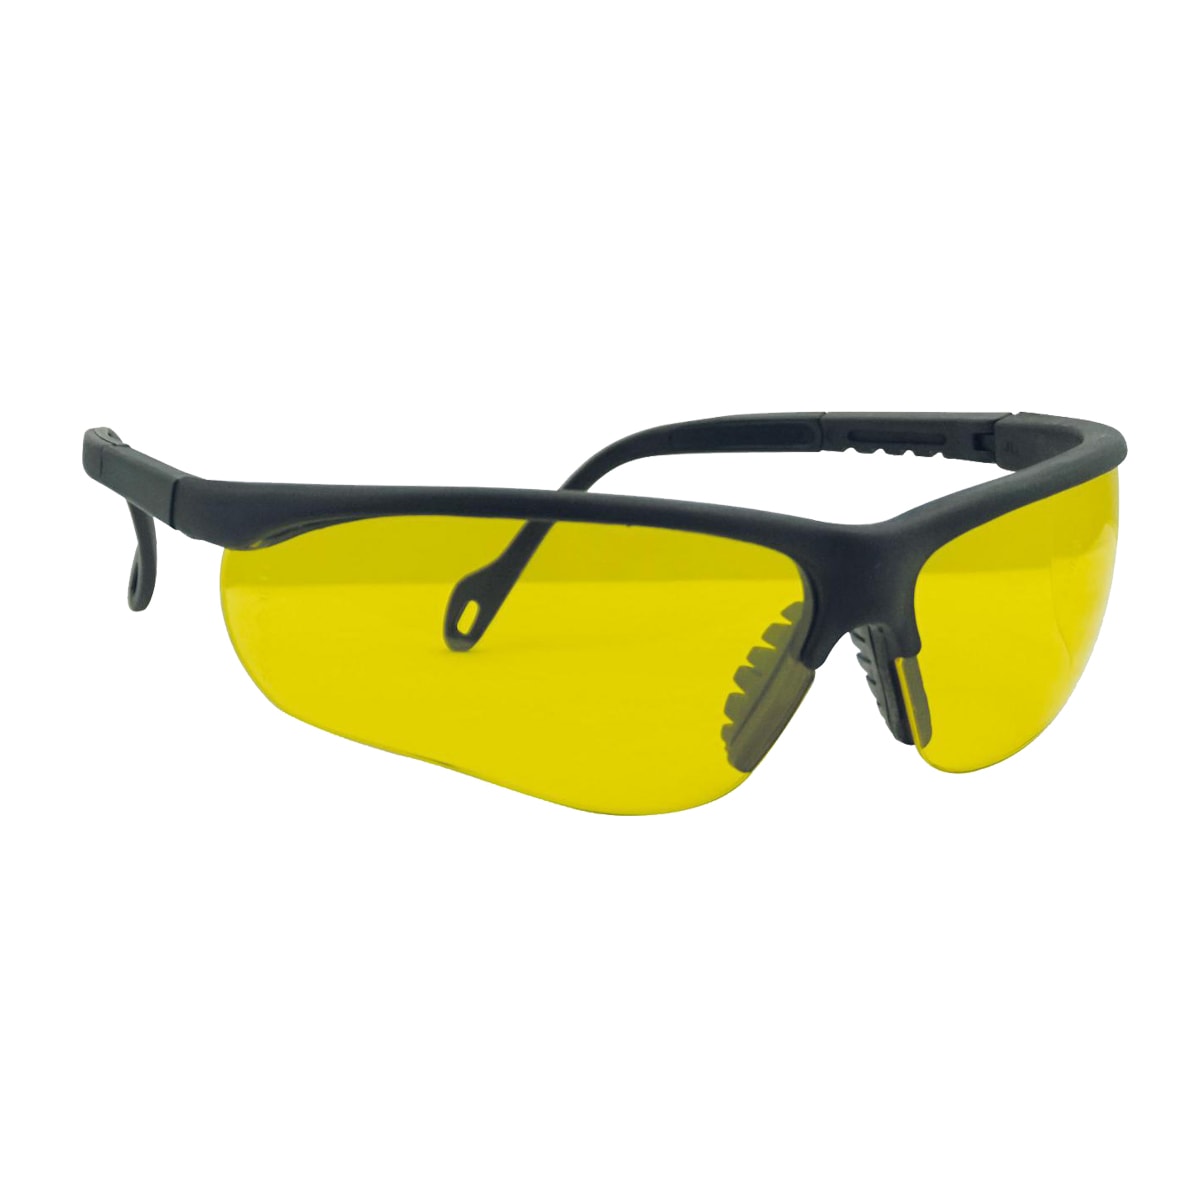 Gafas de Seguridad Lentes Amarillas - Lansa Diffusion